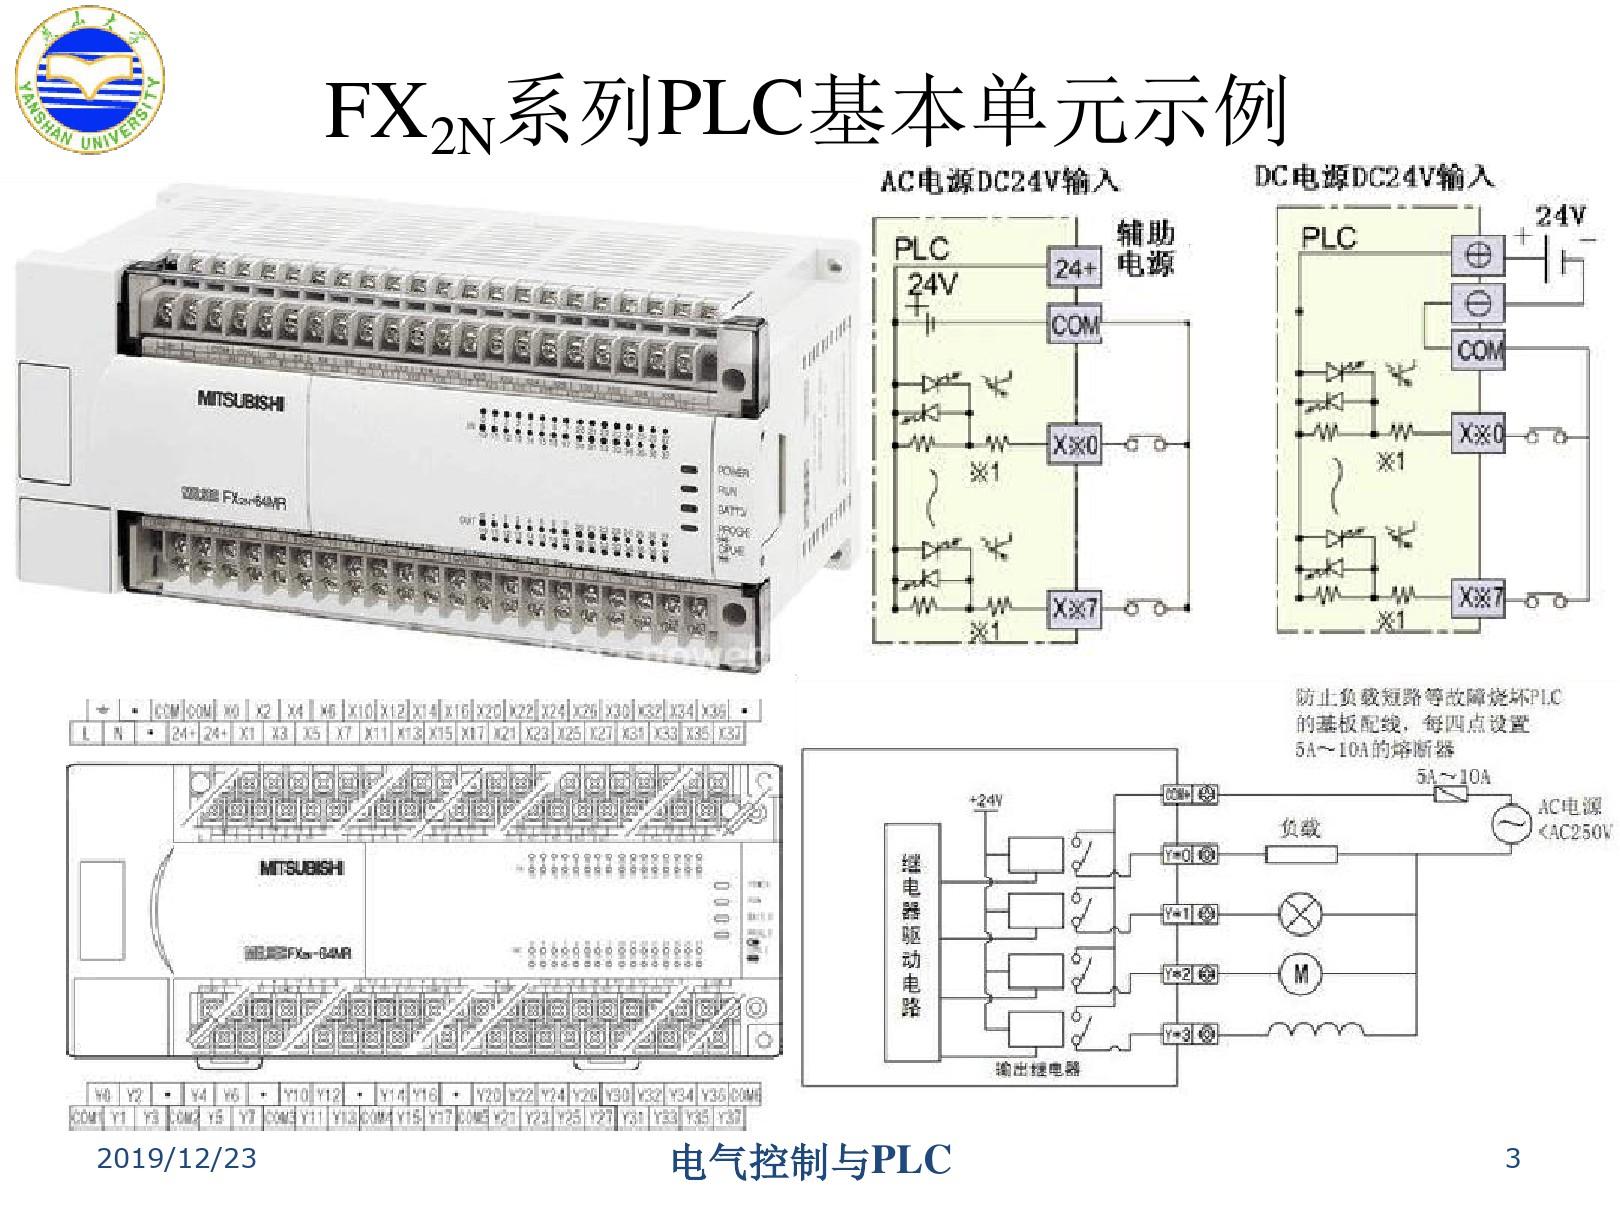 5三菱FX2N系列PLC及其基本指令